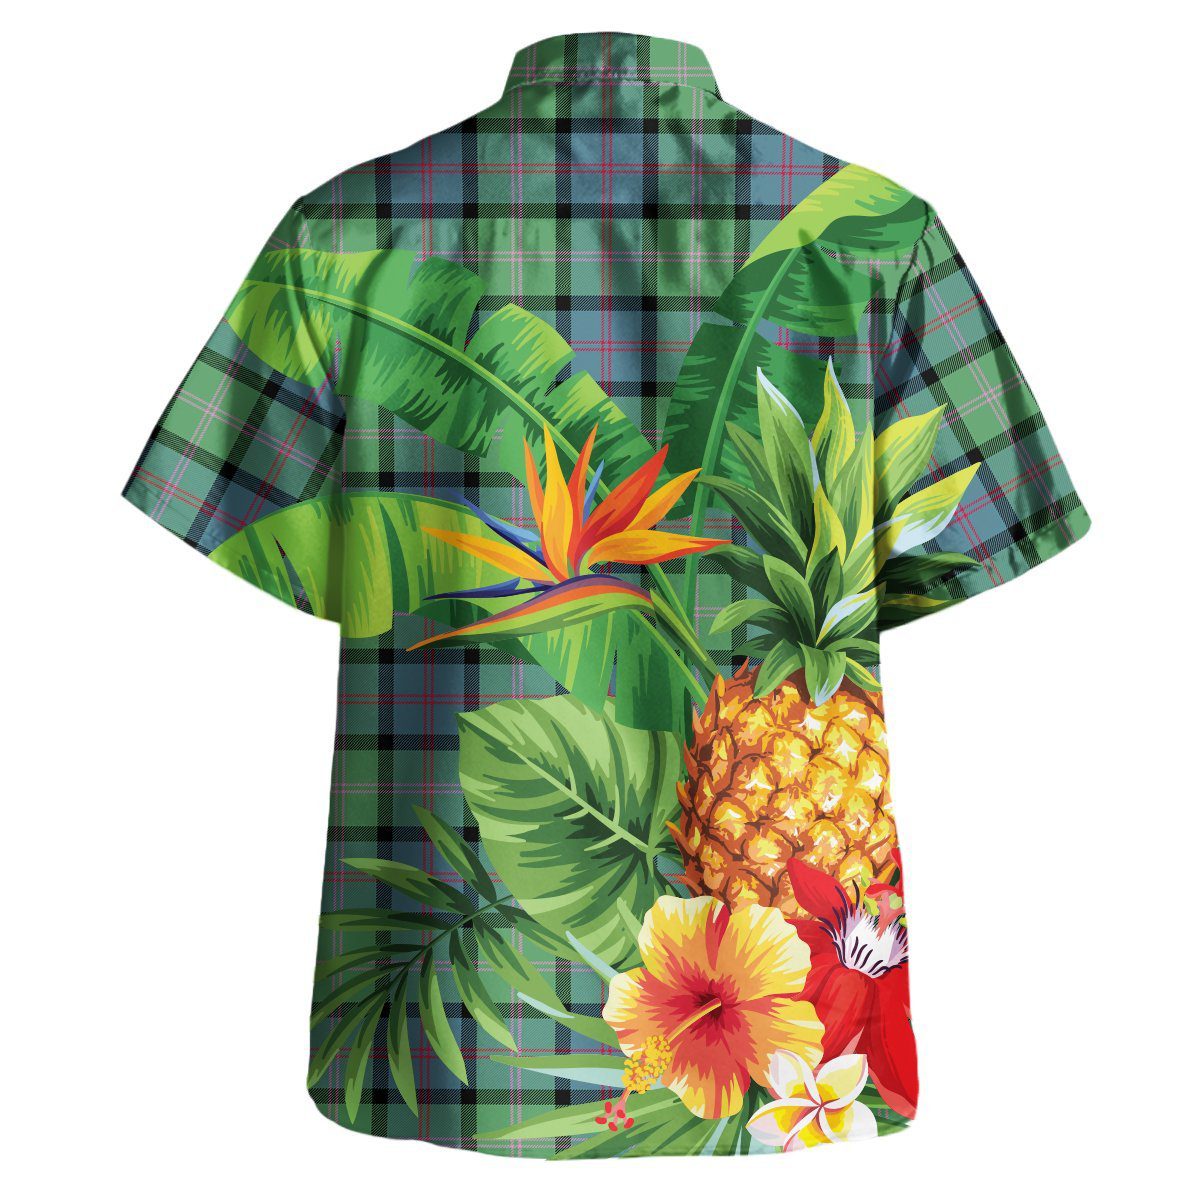 MacThomas Ancient Tartan Aloha Shirt version 2